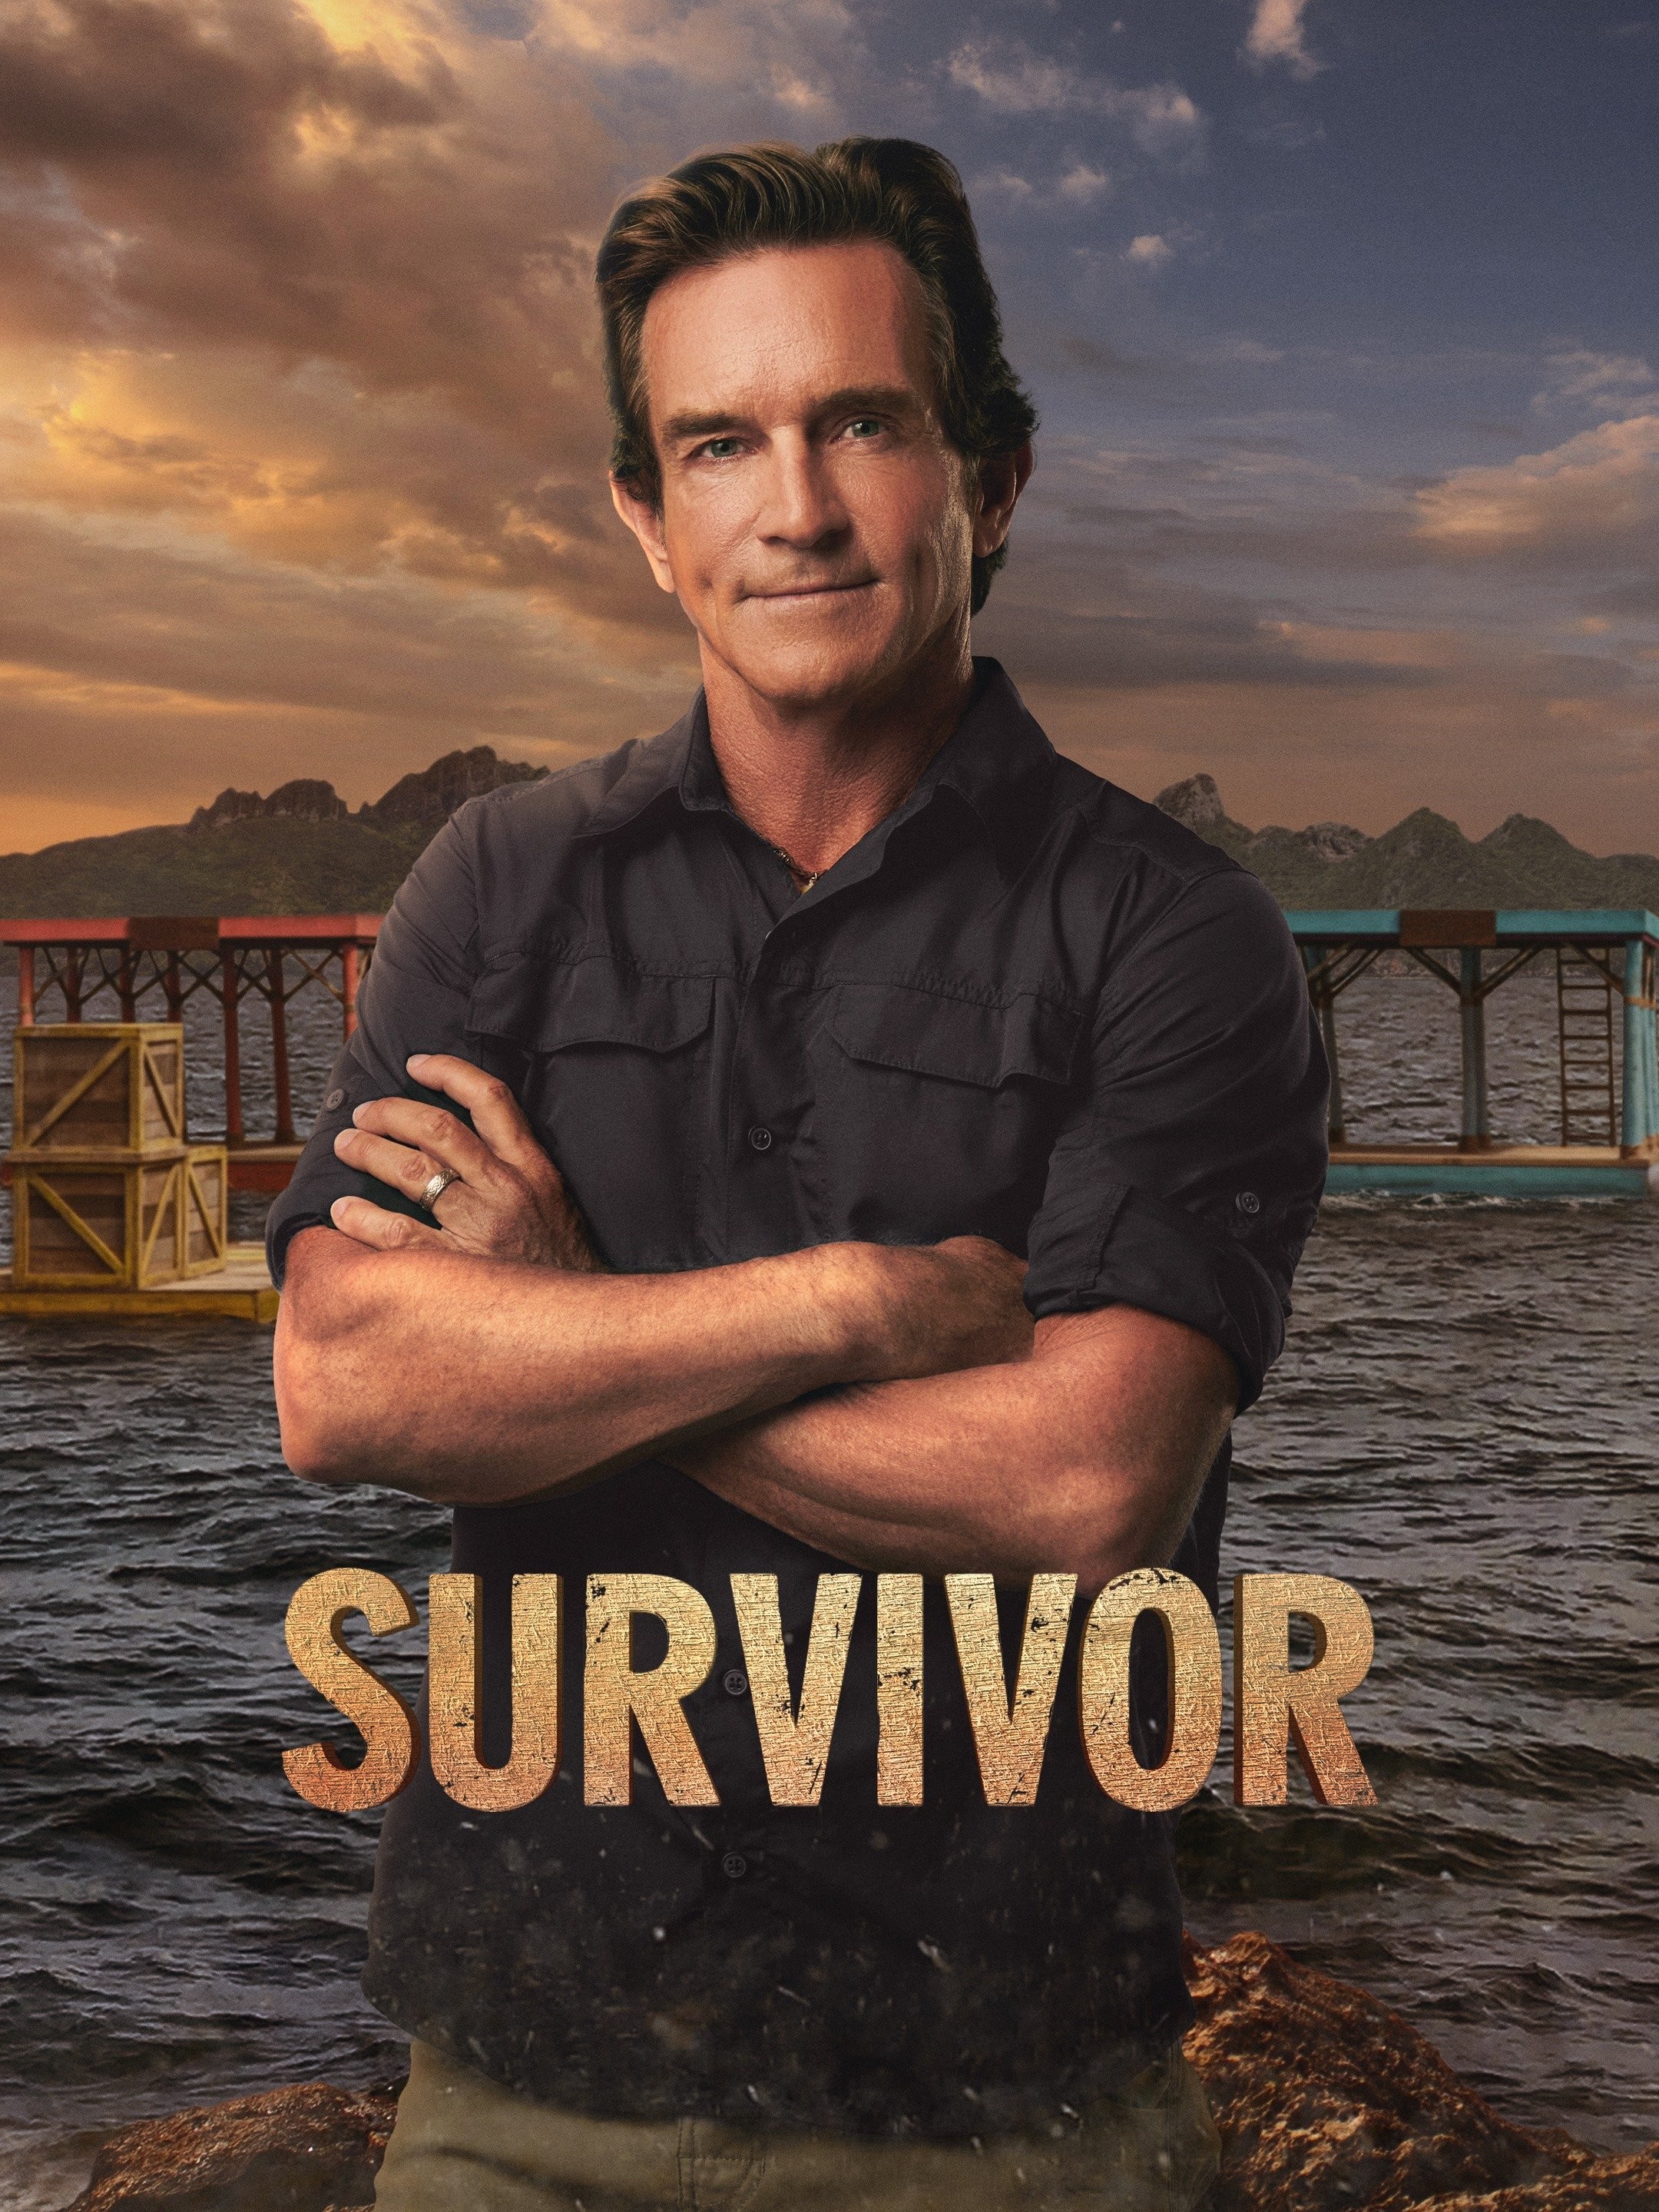 Survivor 44: How did castaways Josh, Matthew fare in the premiere?